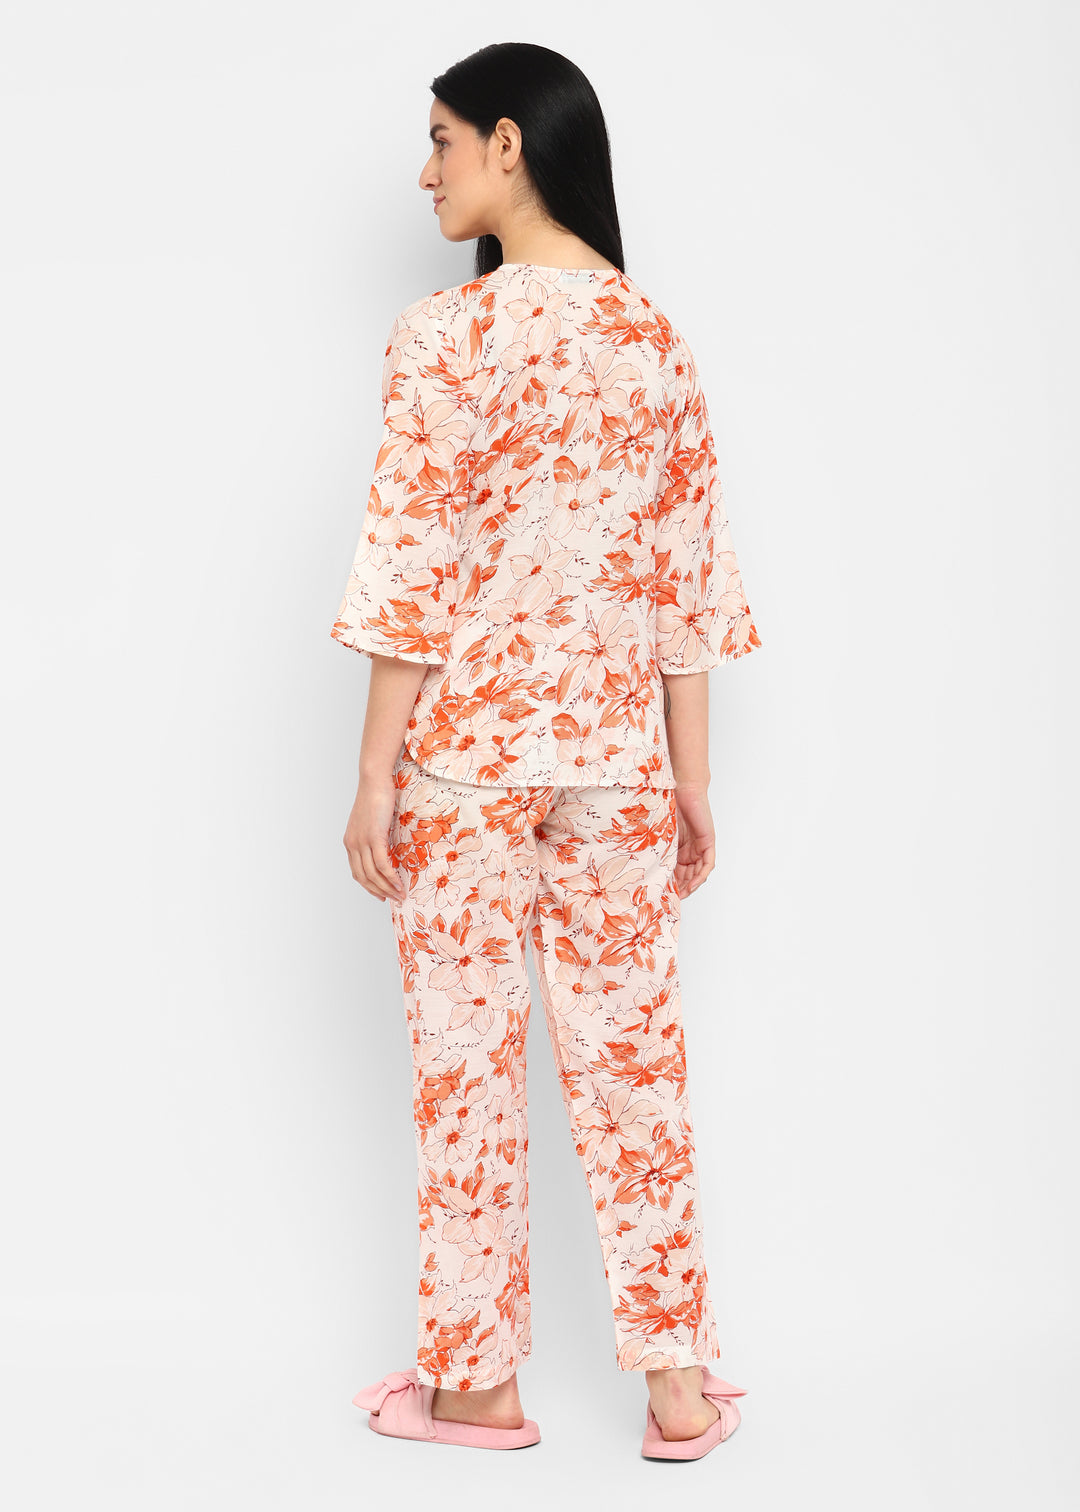 Multi Flower Orange Print V Neck 3/4th Sleeve Women's Night suit - Shopbloom